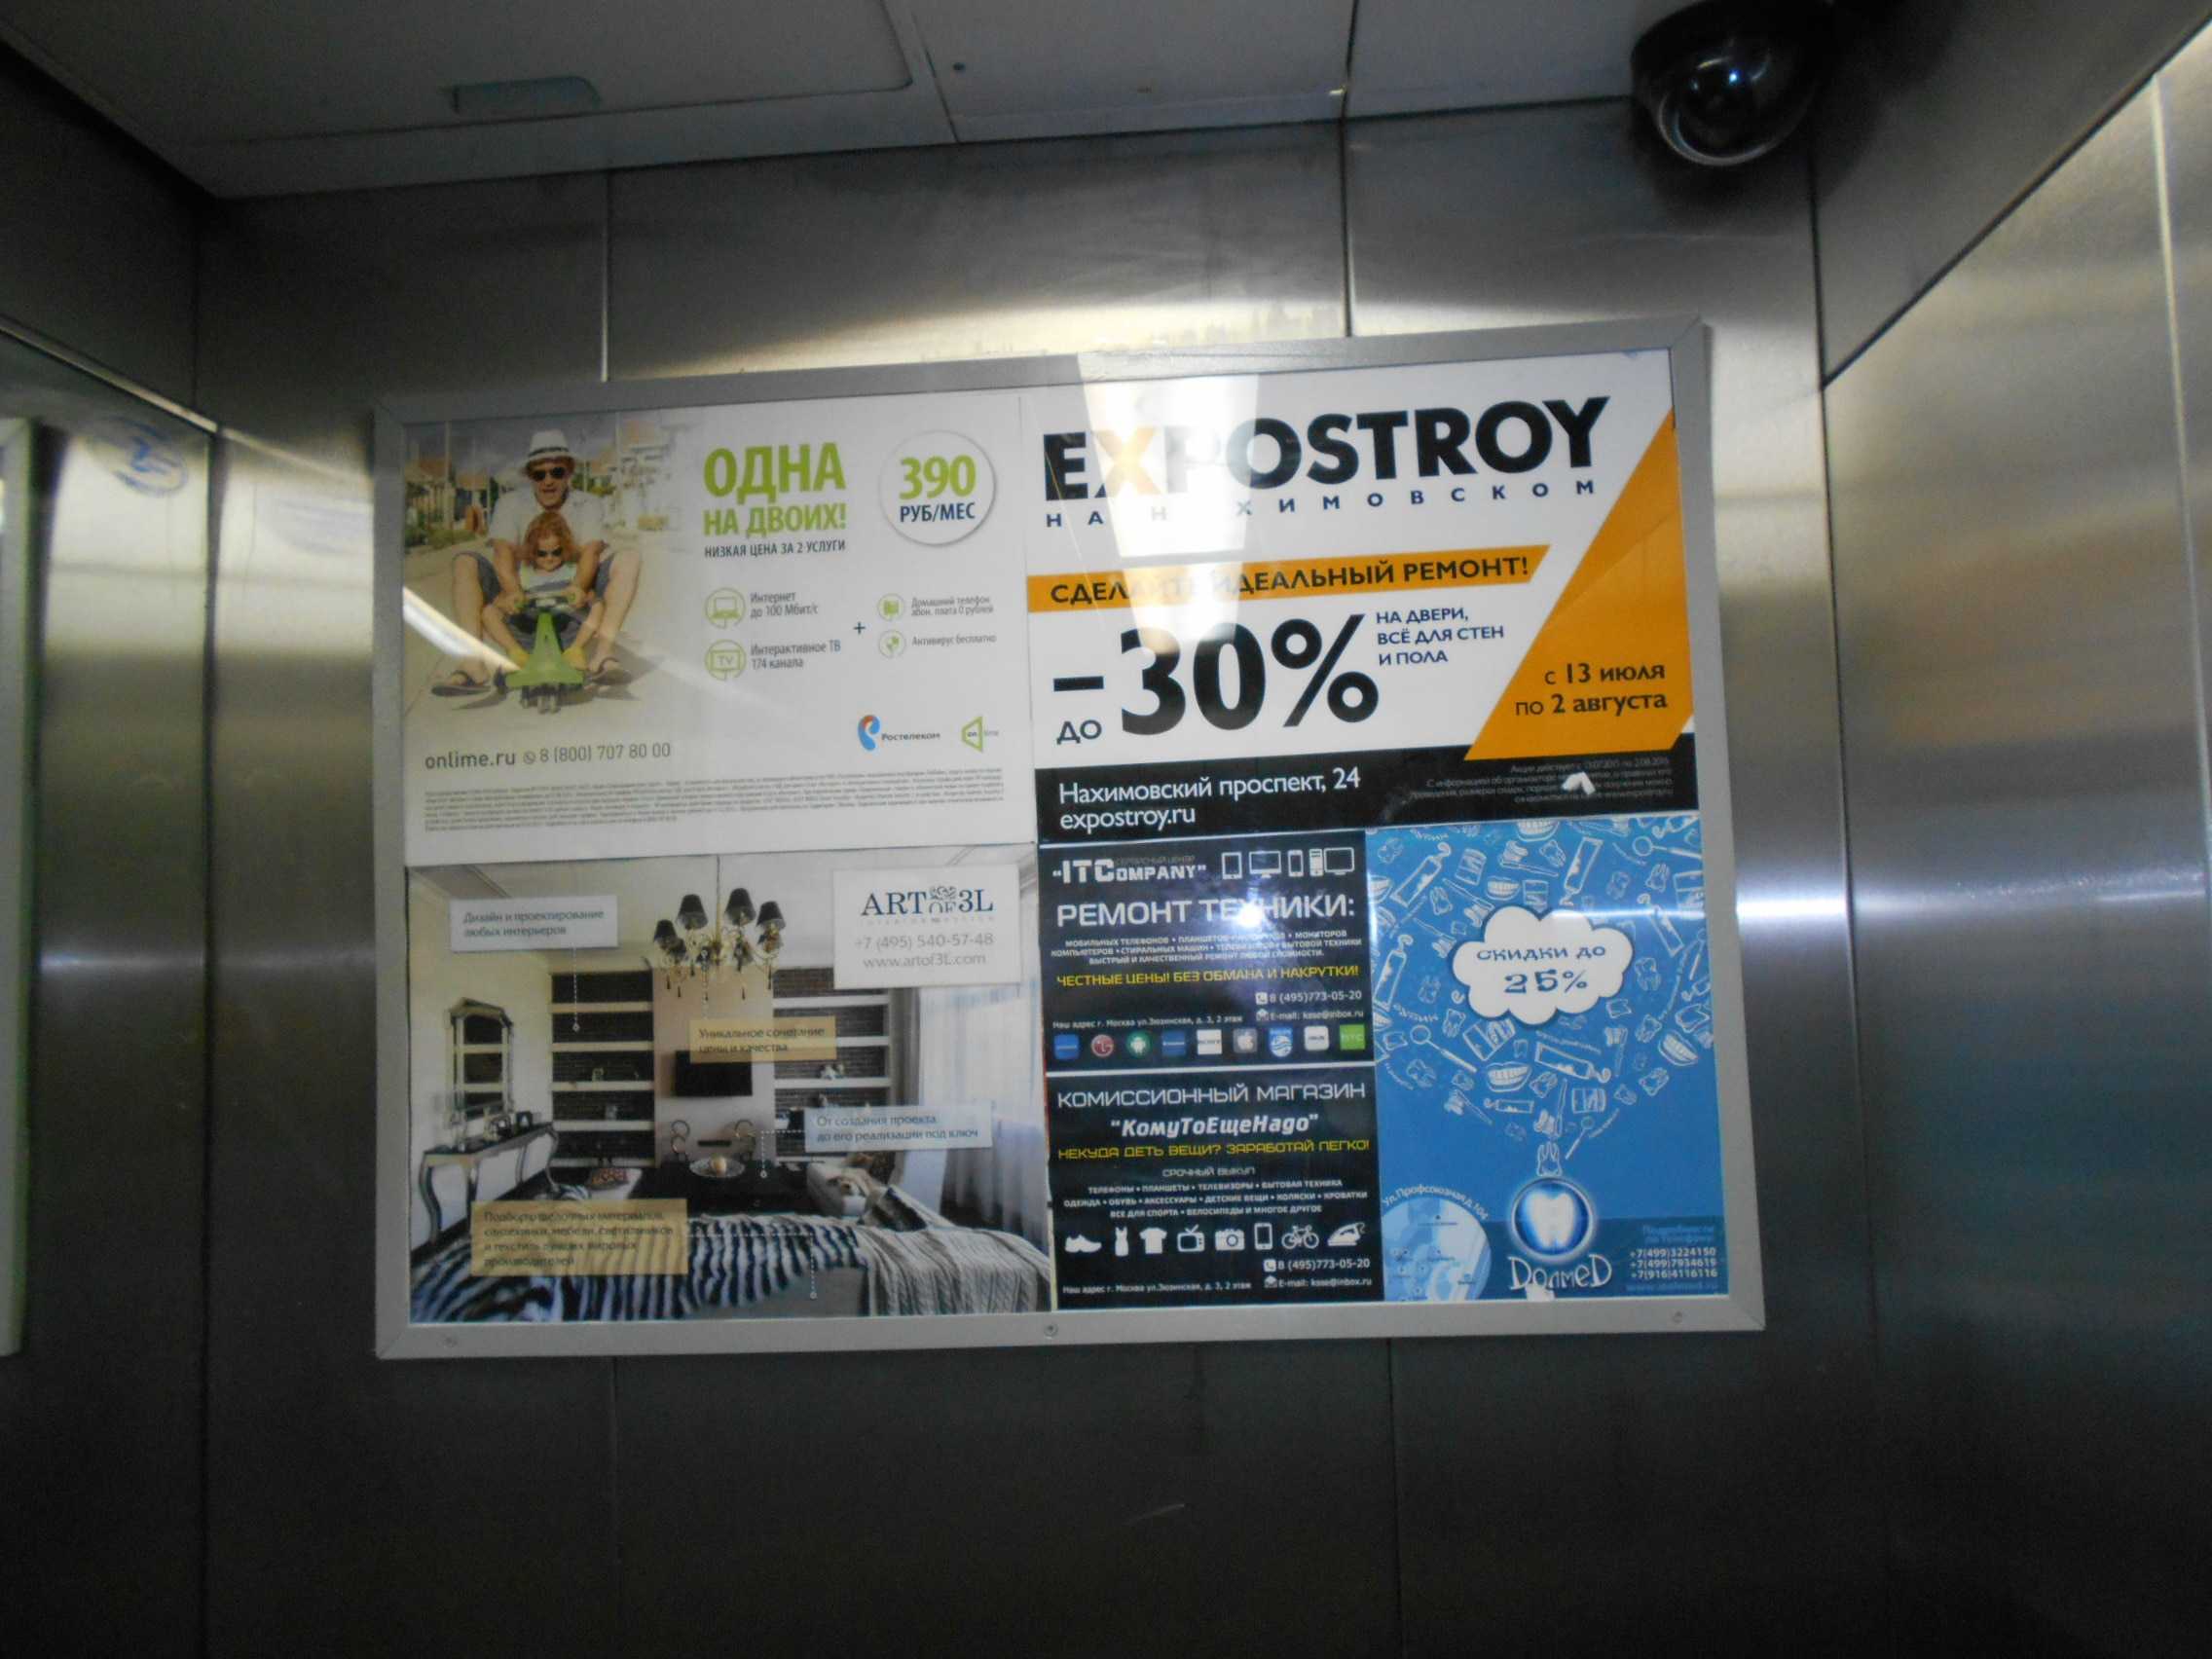 Реклама в лифтах, 5 вариантов размещения, стоимость